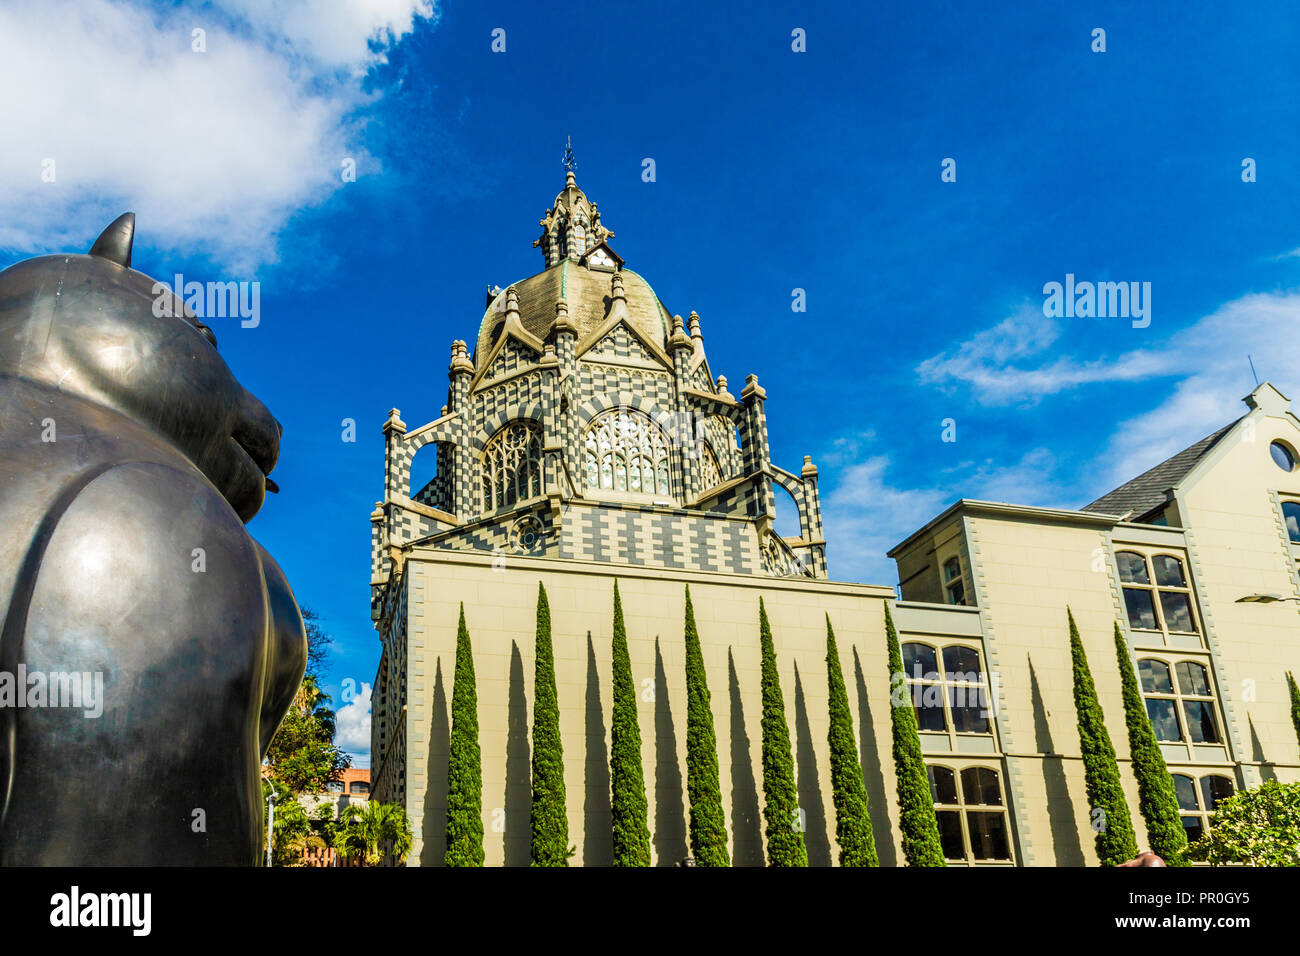 Ein Blick auf das Rafael Uribe Uribe Palast der Kultur mit dem Fernando Botero statue Gato (Cat) im Vordergrund, Medellin, Kolumbien, Südamerika Stockfoto